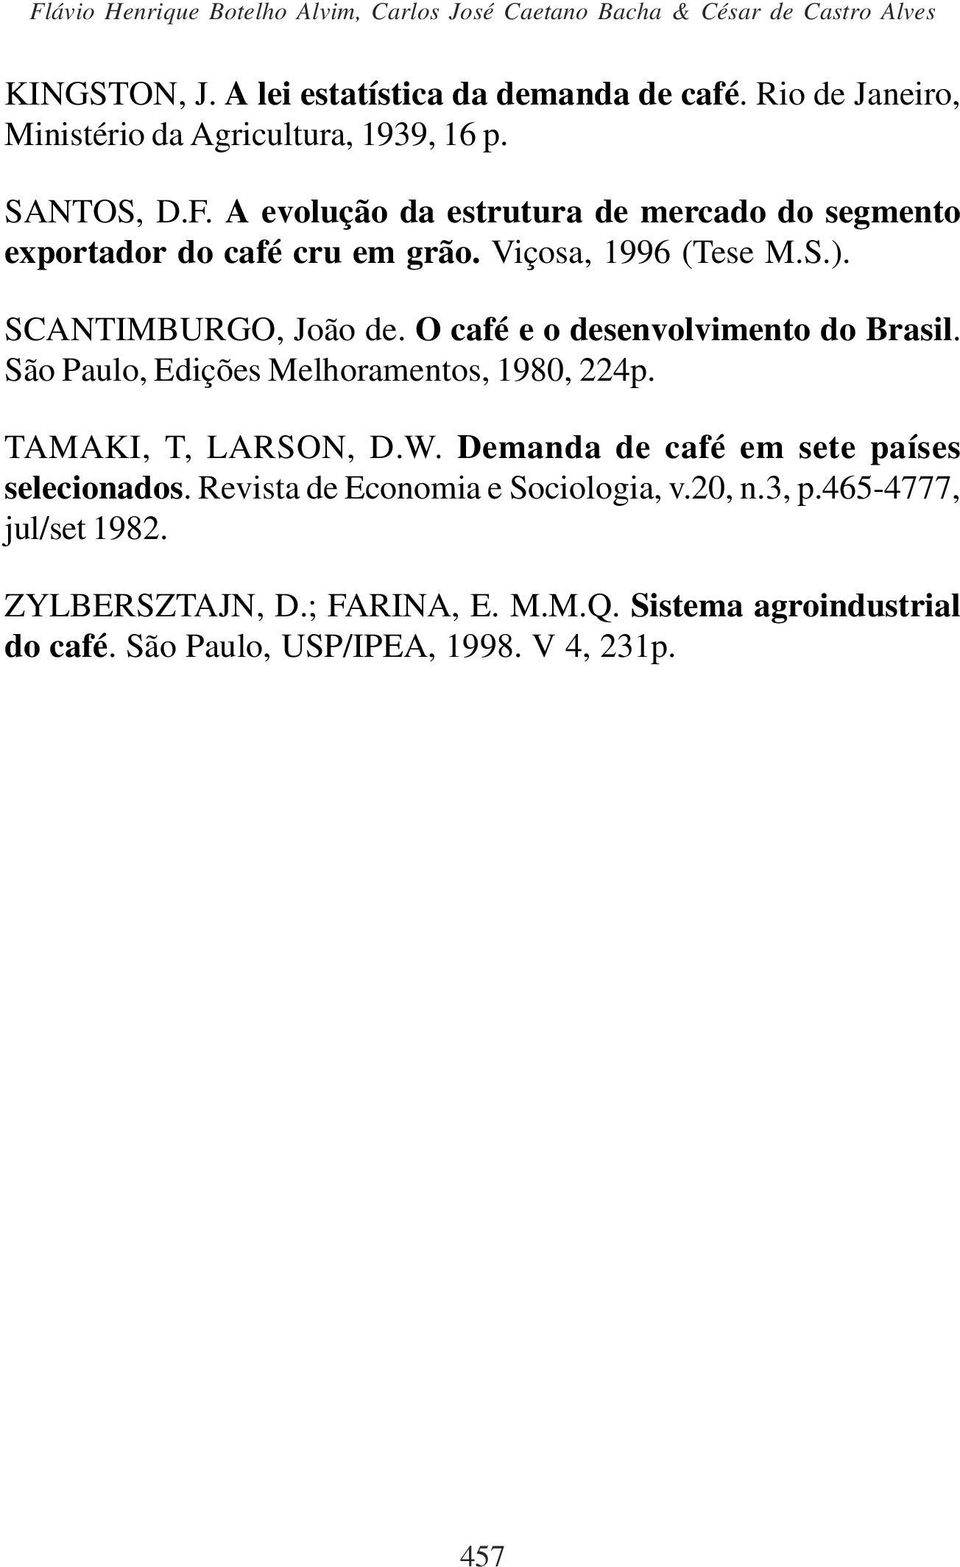 Viçosa, 1996 (Tese M.S.). SCANTIMBURGO, João de. O café e o desenvolvimento do Brasil. São Paulo, Edições Melhoramentos, 1980, 224p. TAMAKI, T, LARSON, D.W.